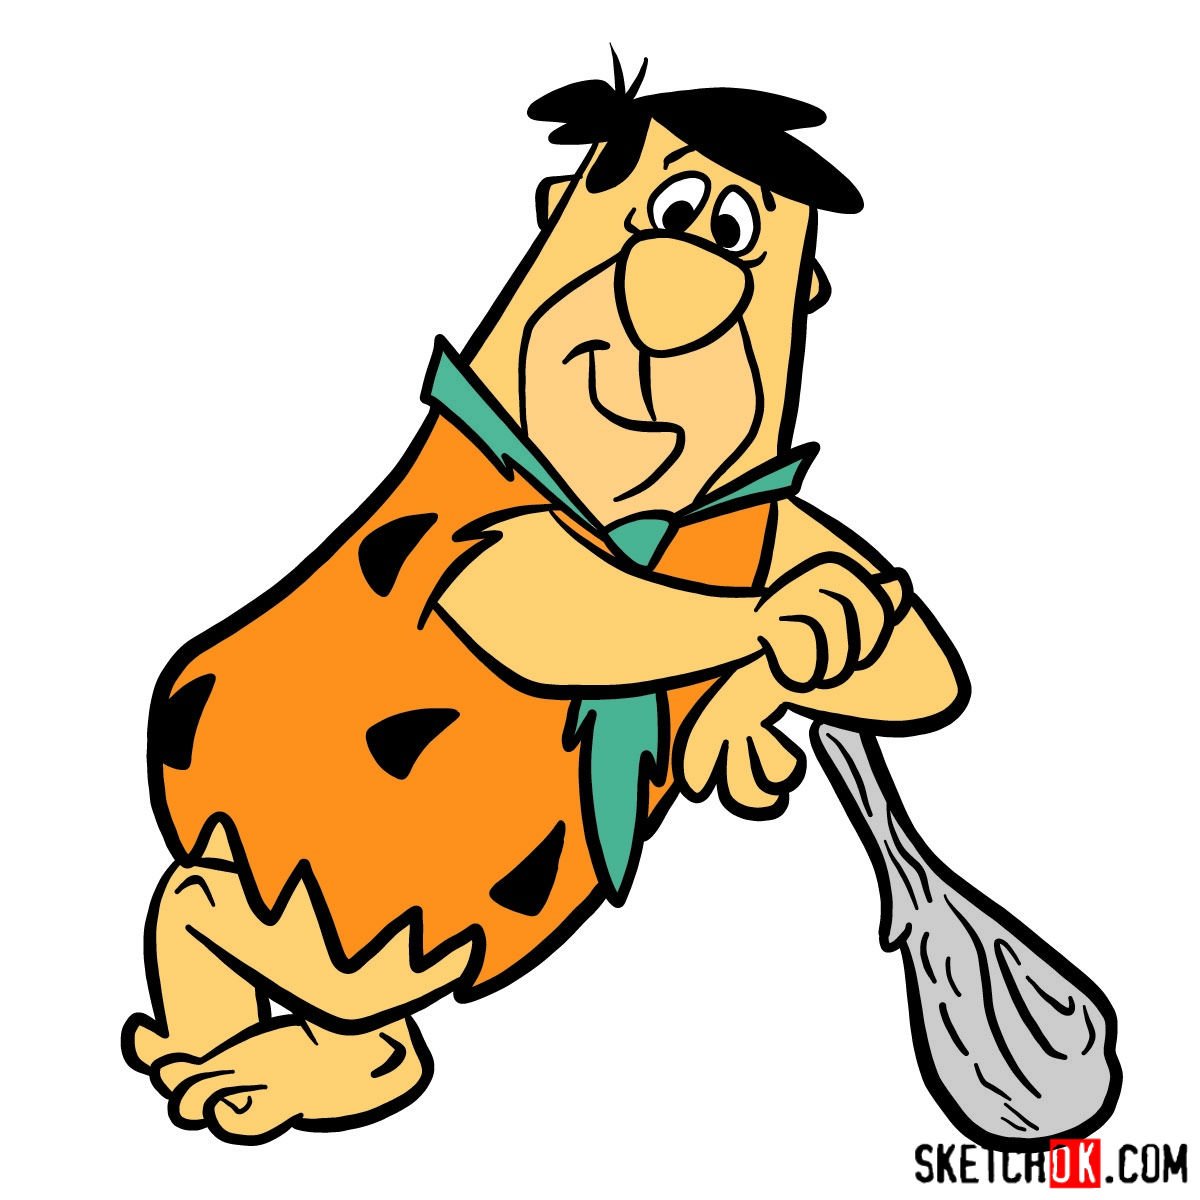 How to draw Fred Flintstone